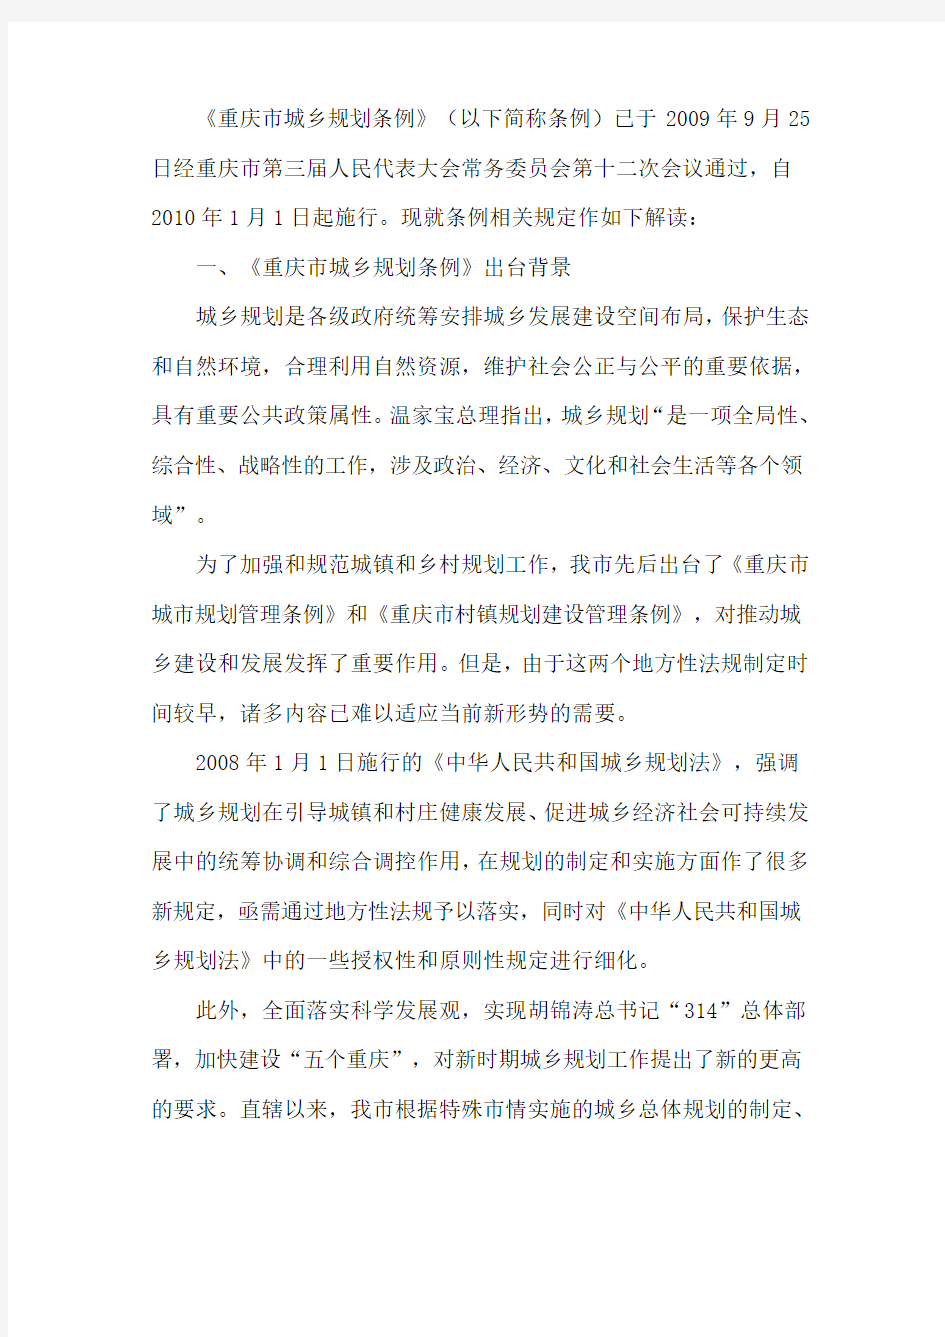 《重庆市城乡规划条例》解读